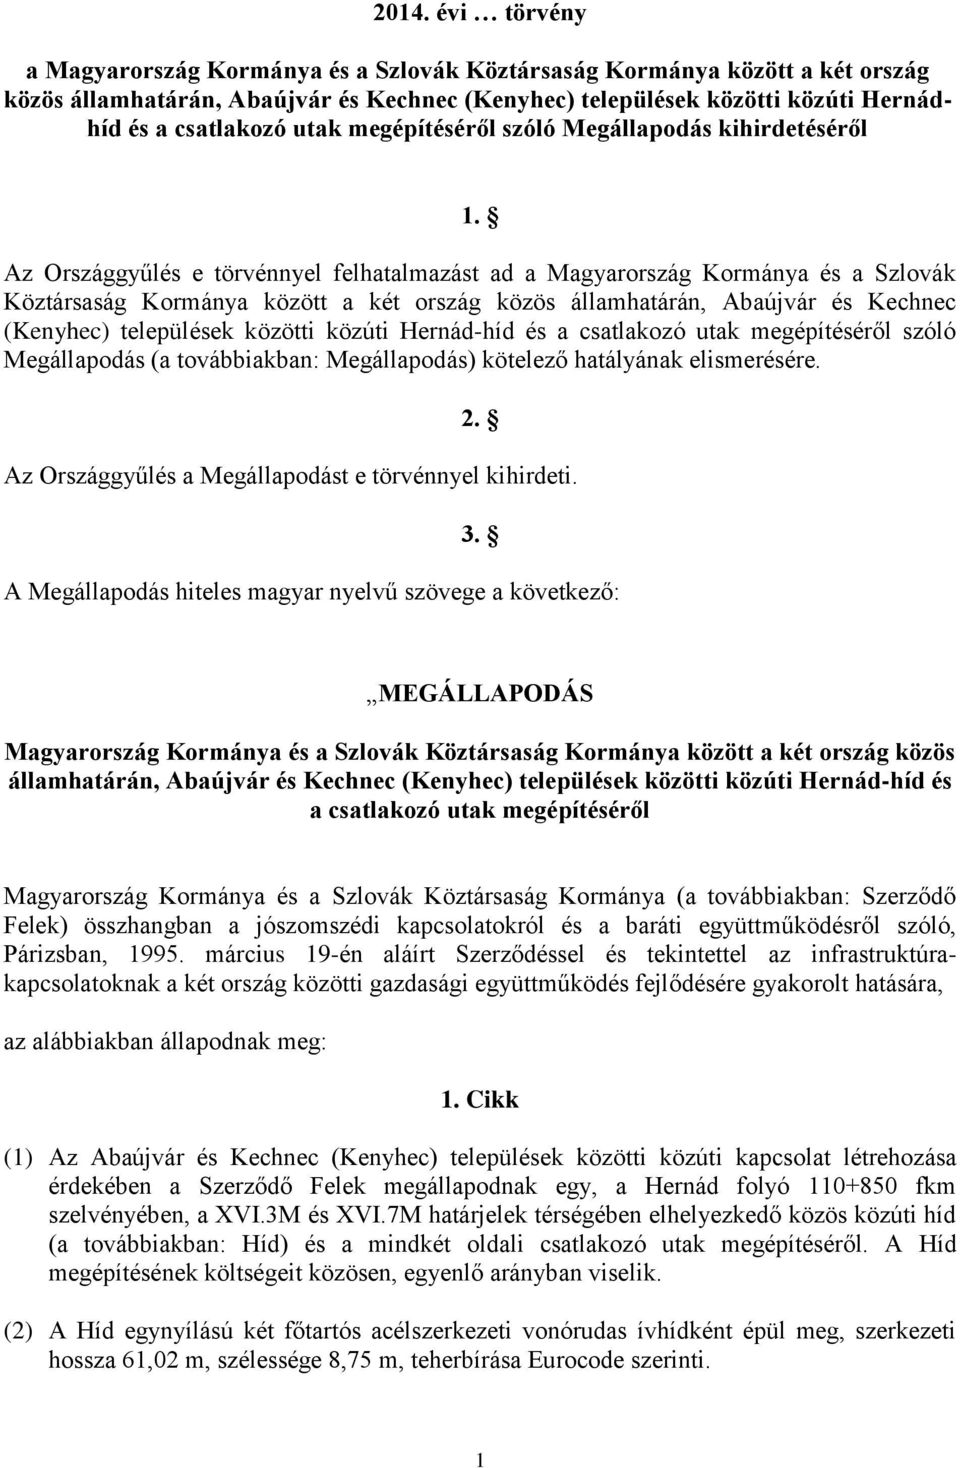 Az Országgyűlés e törvénnyel felhatalmazást ad a Magyarország Kormánya és a Szlovák Köztársaság Kormánya között a két ország közös államhatárán, Abaújvár és Kechnec (Kenyhec) települések közötti